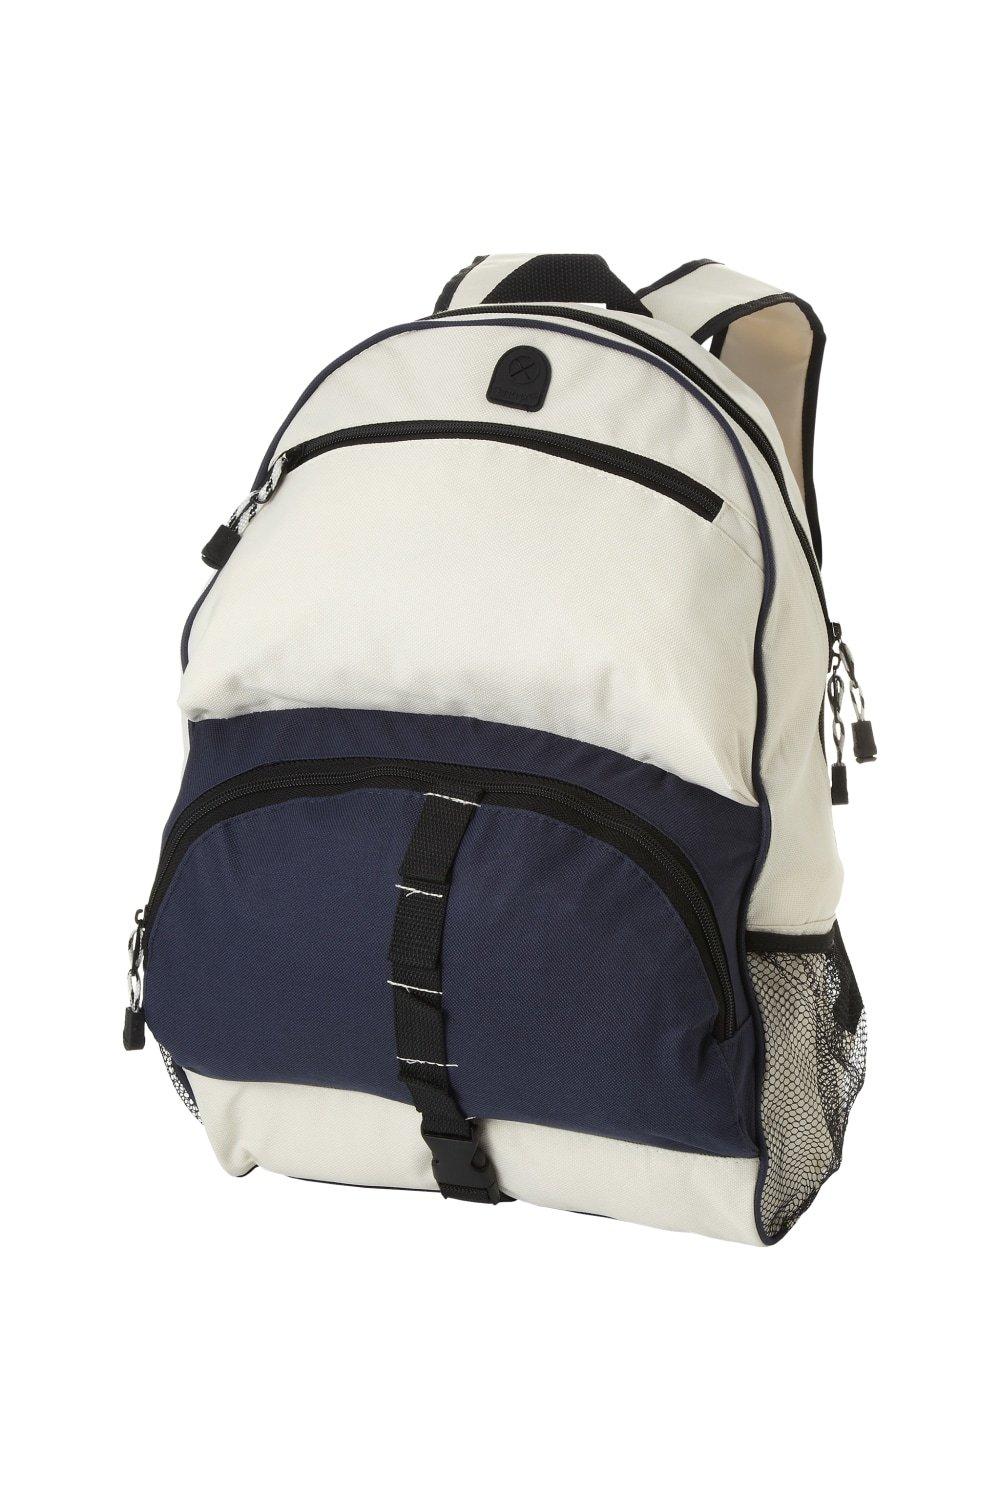 Юта Рюкзак Bullet, темно-синий водонепроницаемый и износостойкий рюкзак из ткани оксфорд с двумя боковыми сетчатыми карманами